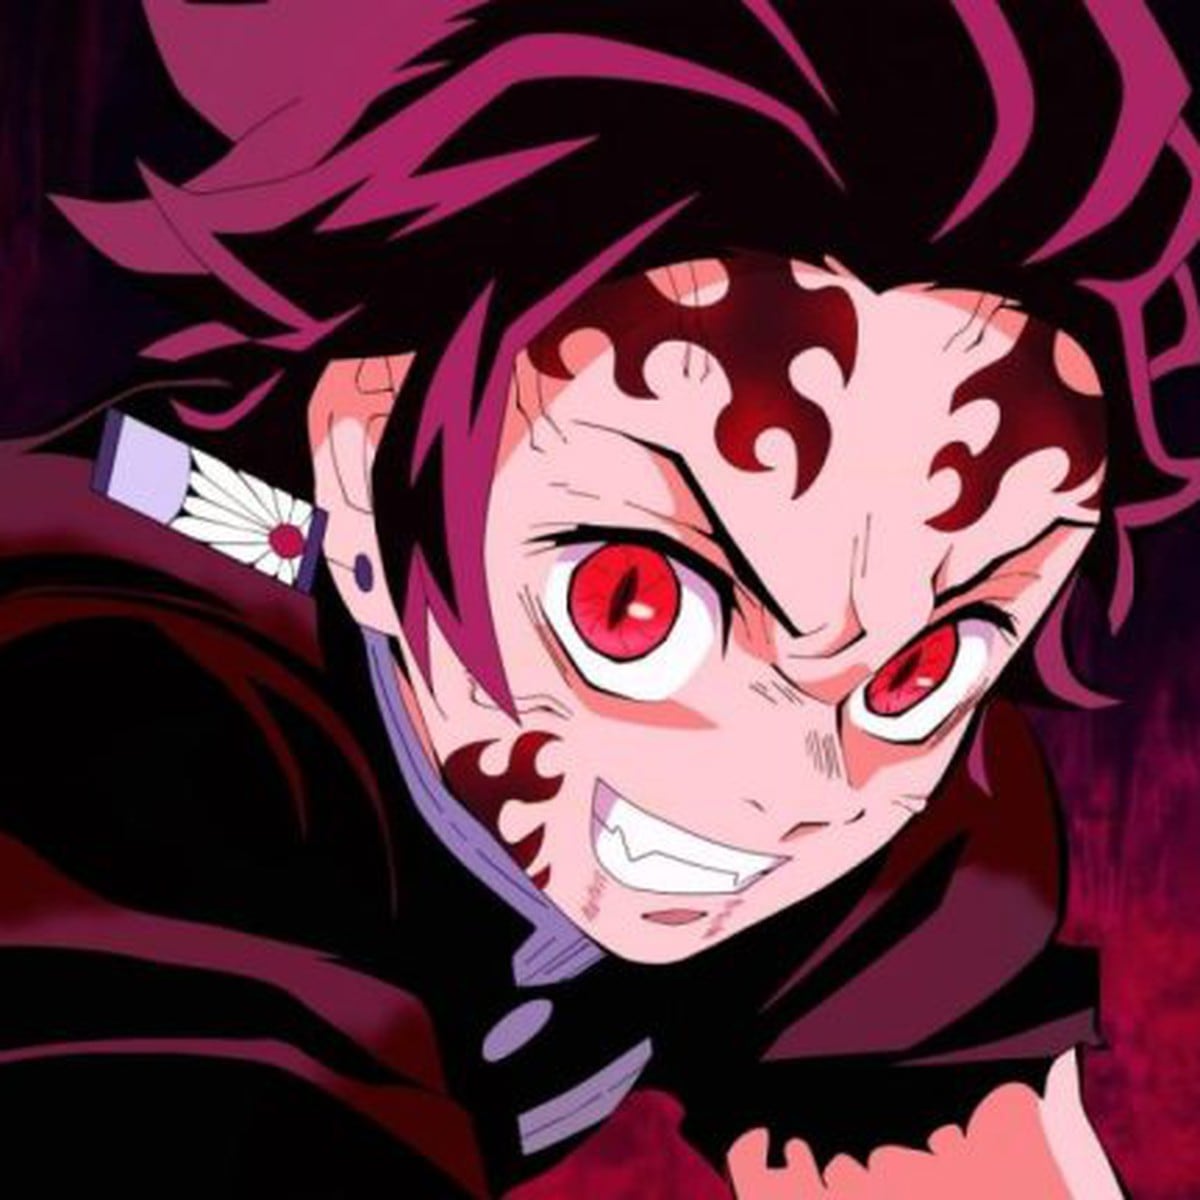 Demon Slayer: Kimetsu no Yaiba Season 2 confirmada para 2021